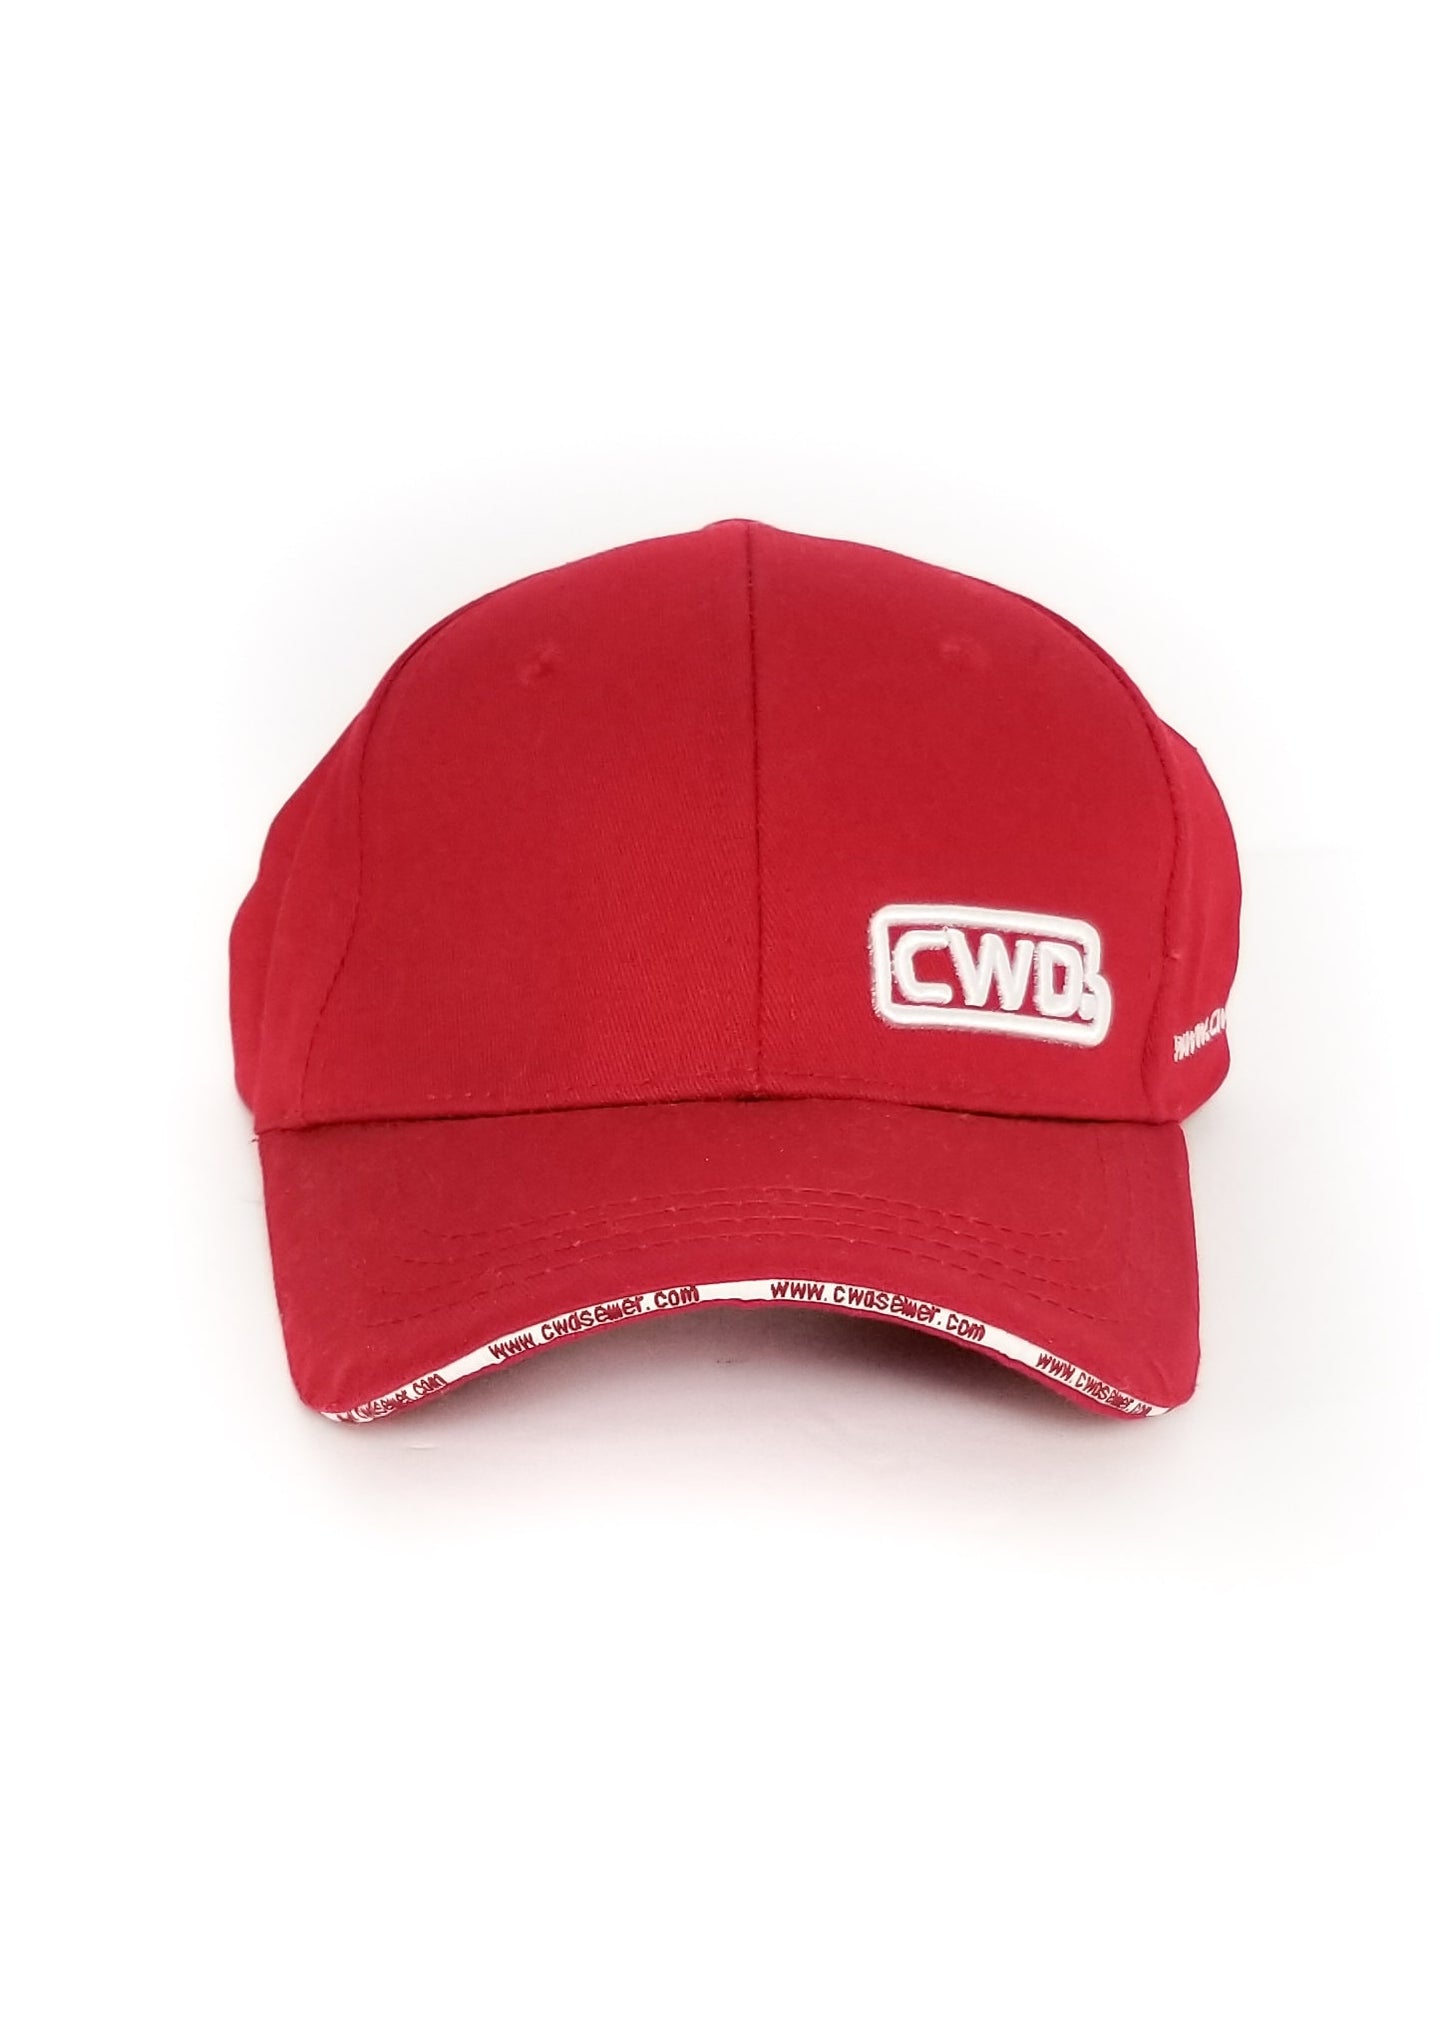 CWD Cap - Red - 58cm